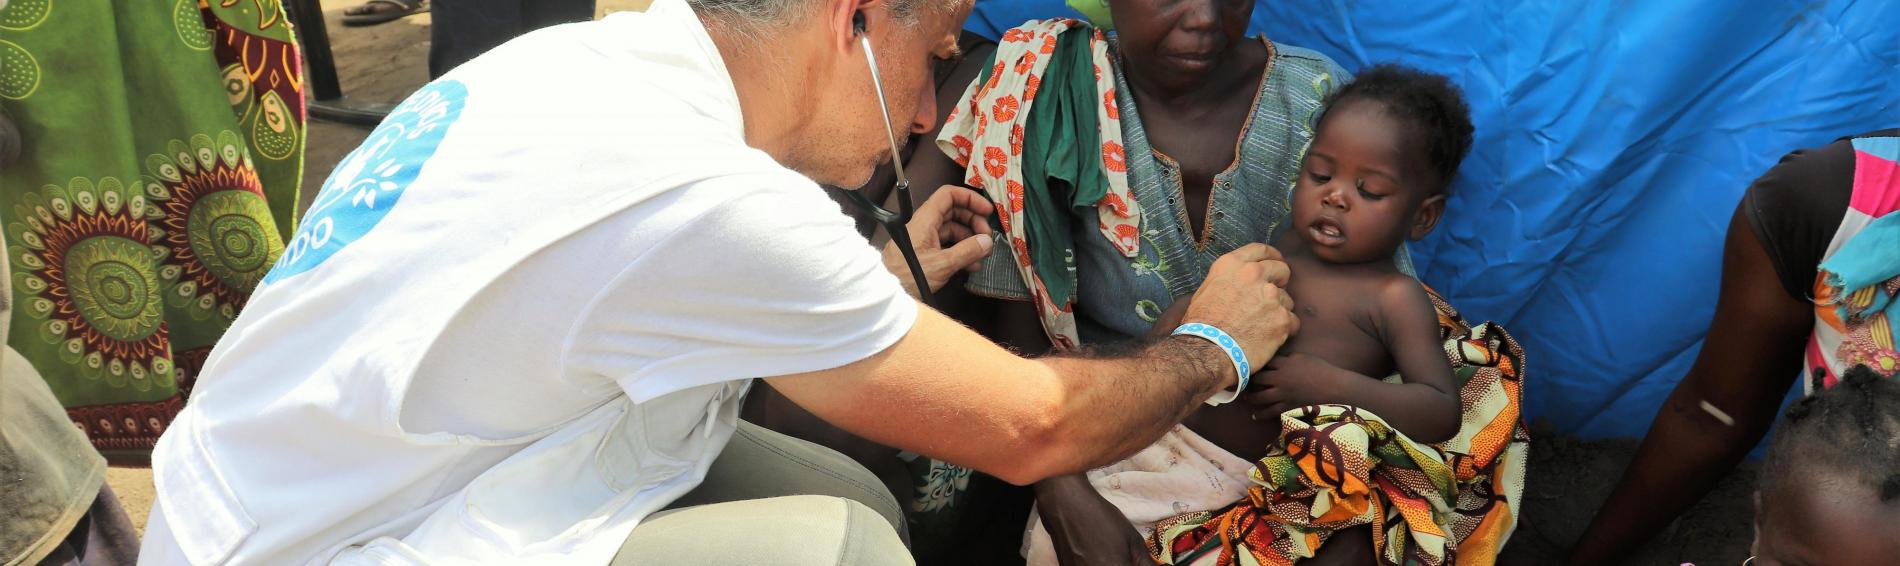 Un médecin examinant un enfant au Mozambique